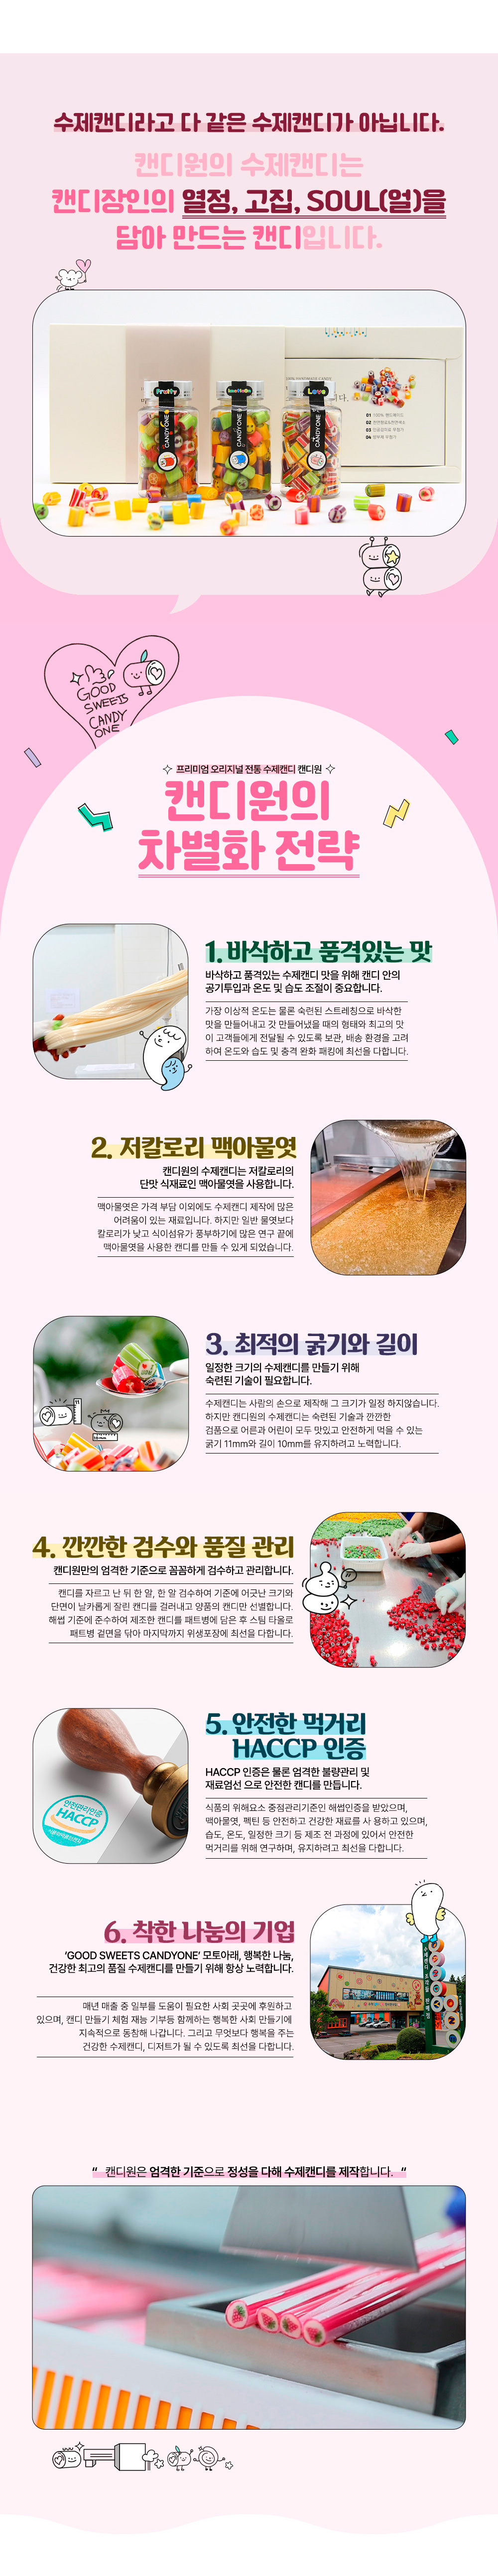 제주캔디원 수제캔디 3종선물세트 무료배송